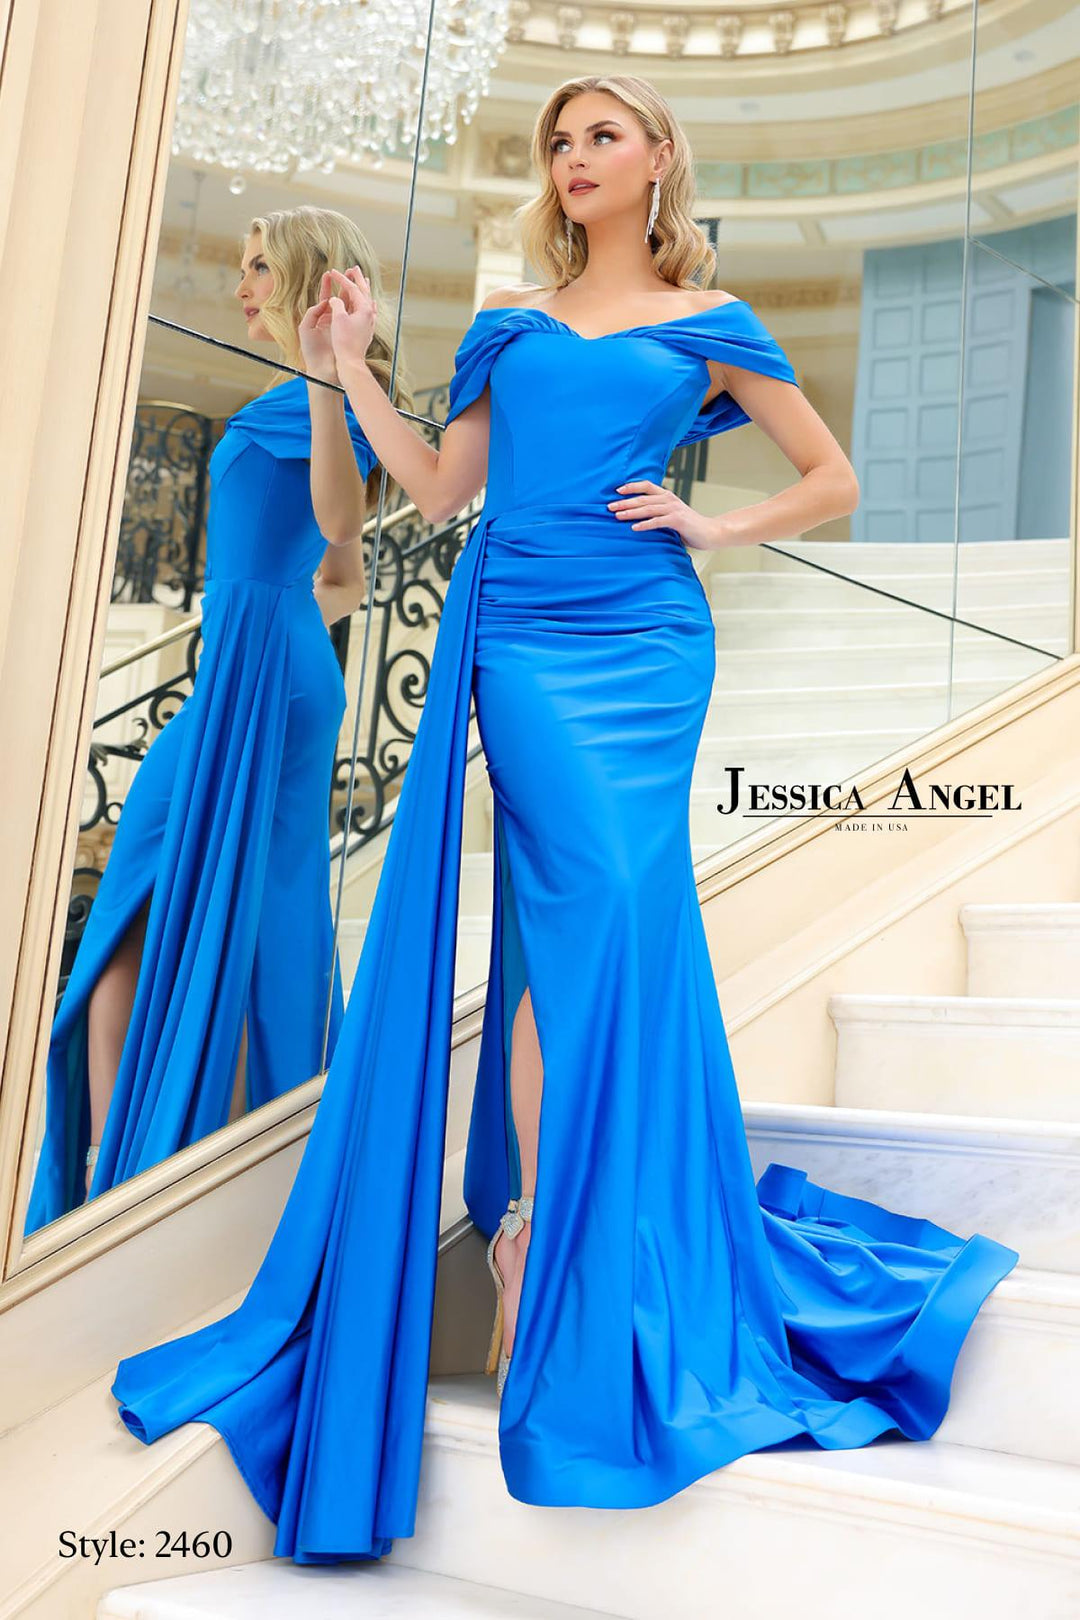 JESSICA ANGEL JA2460 DRESS - FOSTANI